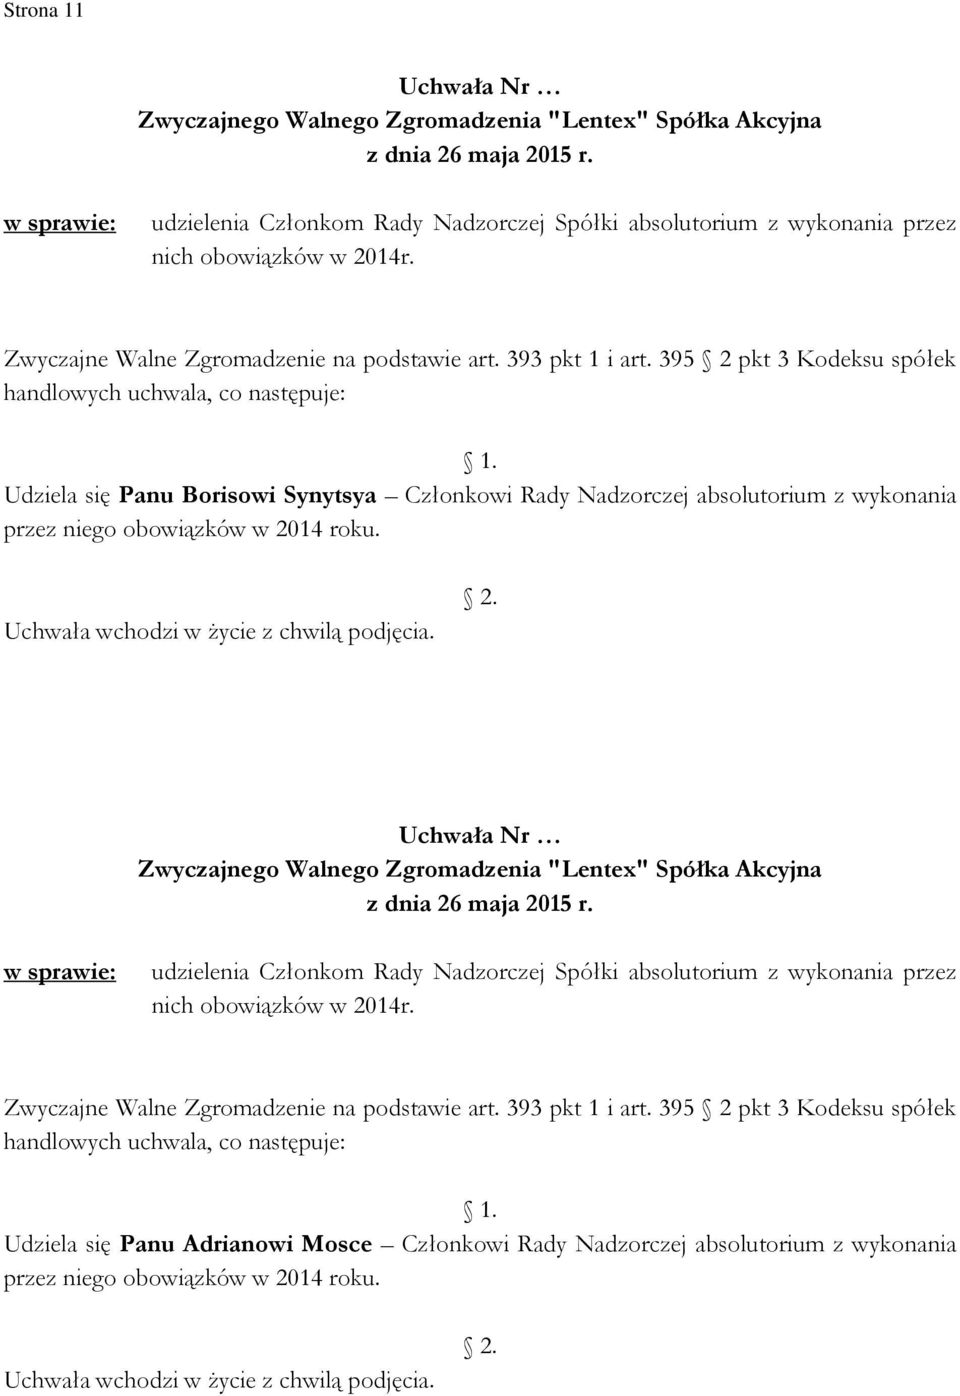 395 2 pkt 3 Kodeksu spółek handlowych uchwala, co następuje: Udziela się Panu Borisowi Synytsya Członkowi Rady Nadzorczej absolutorium z wykonania przez niego obowiązków w 2014 roku. 2. z dnia 26 maja 2015 r.